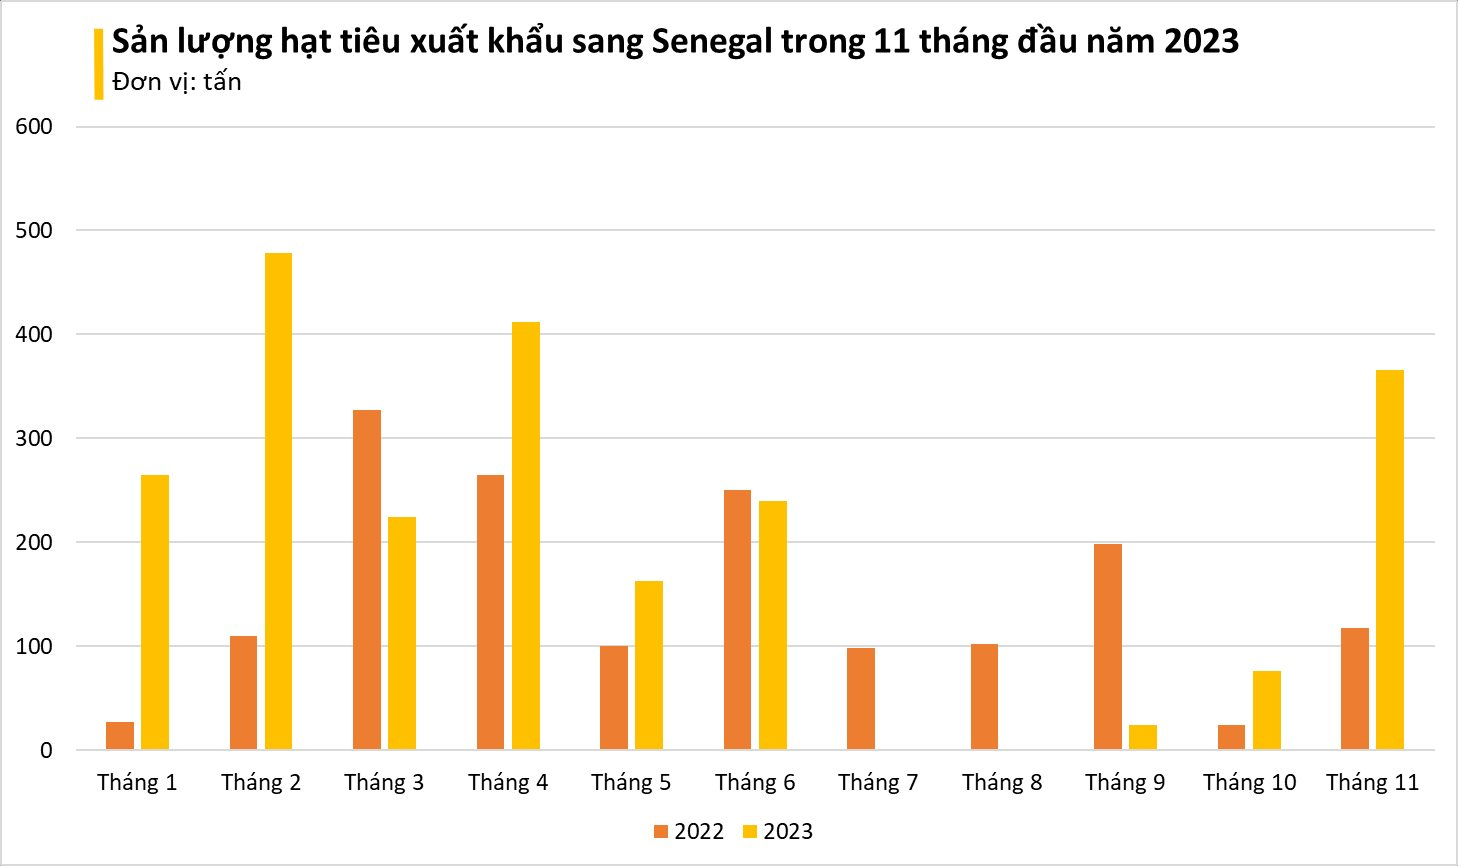 Một loại 'vàng đen' của Việt Nam bỗng ồ ạt đổ bộ Tây Phi: xuất khẩu tăng nóng hơn 200%, cả thế giới phụ thuộc vào Việt Nam - Ảnh 2.